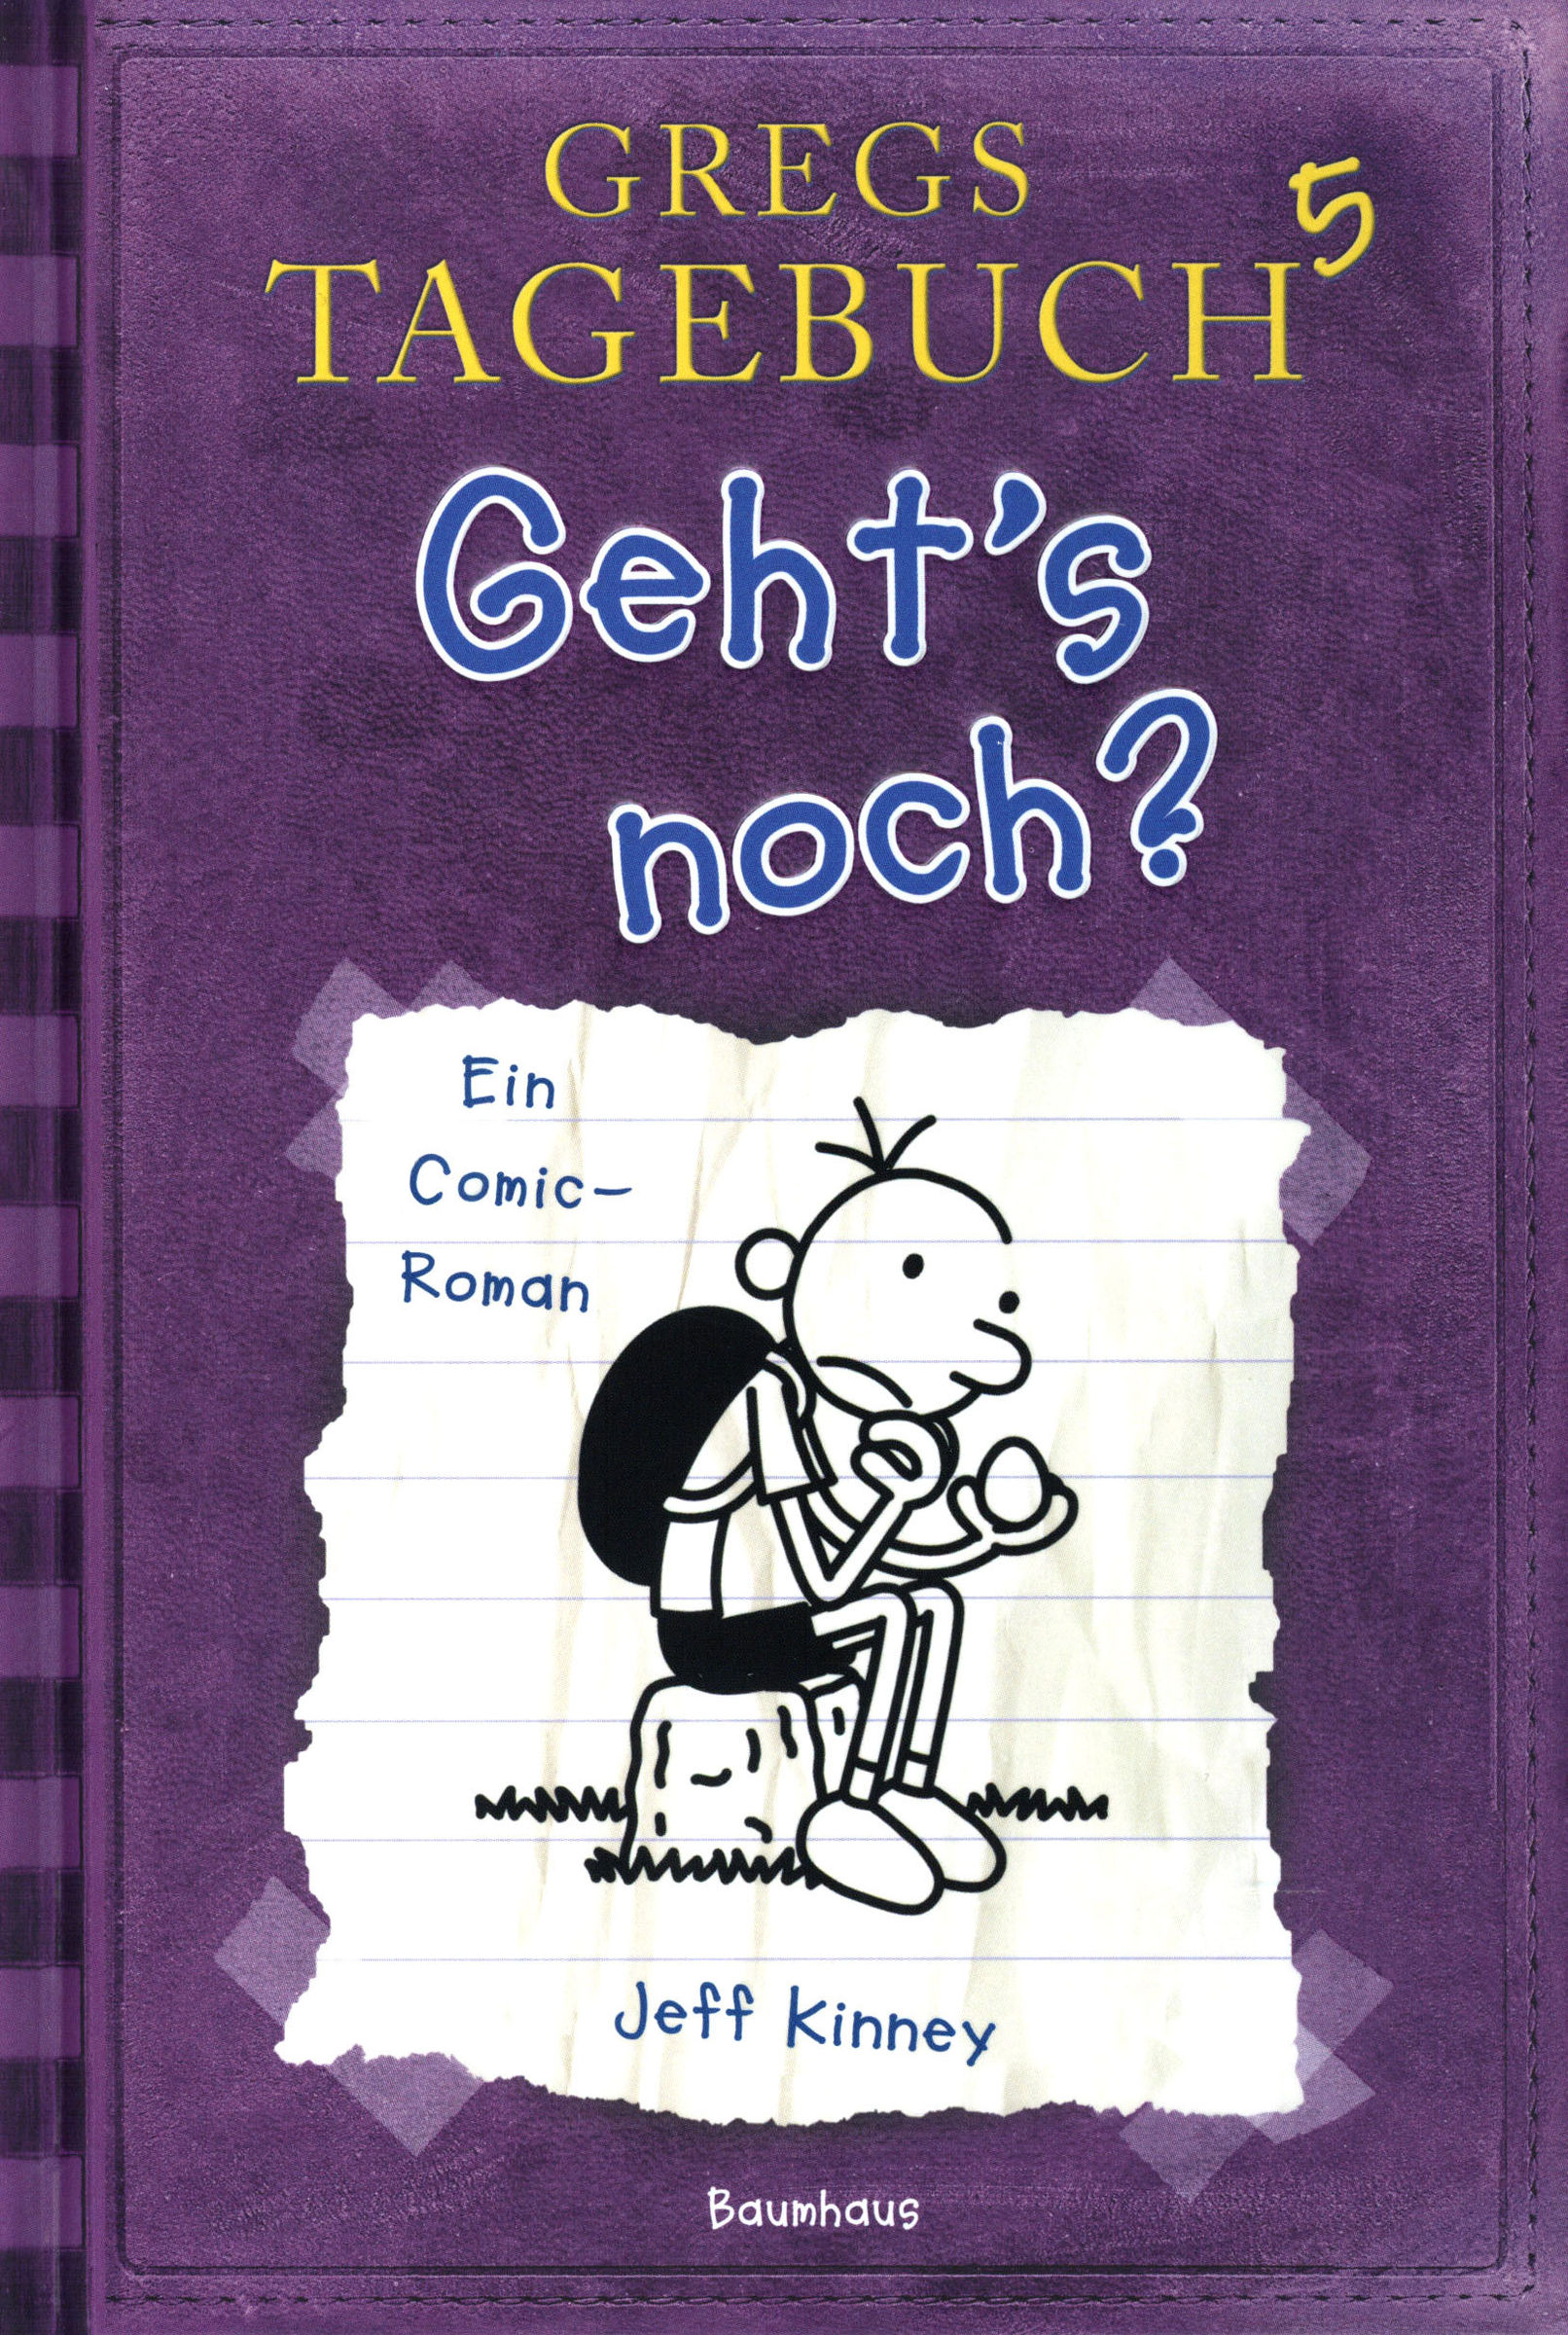 Gregs Tagebuch - Geht's noch? Buch versandkostenfrei bei Weltbild.de